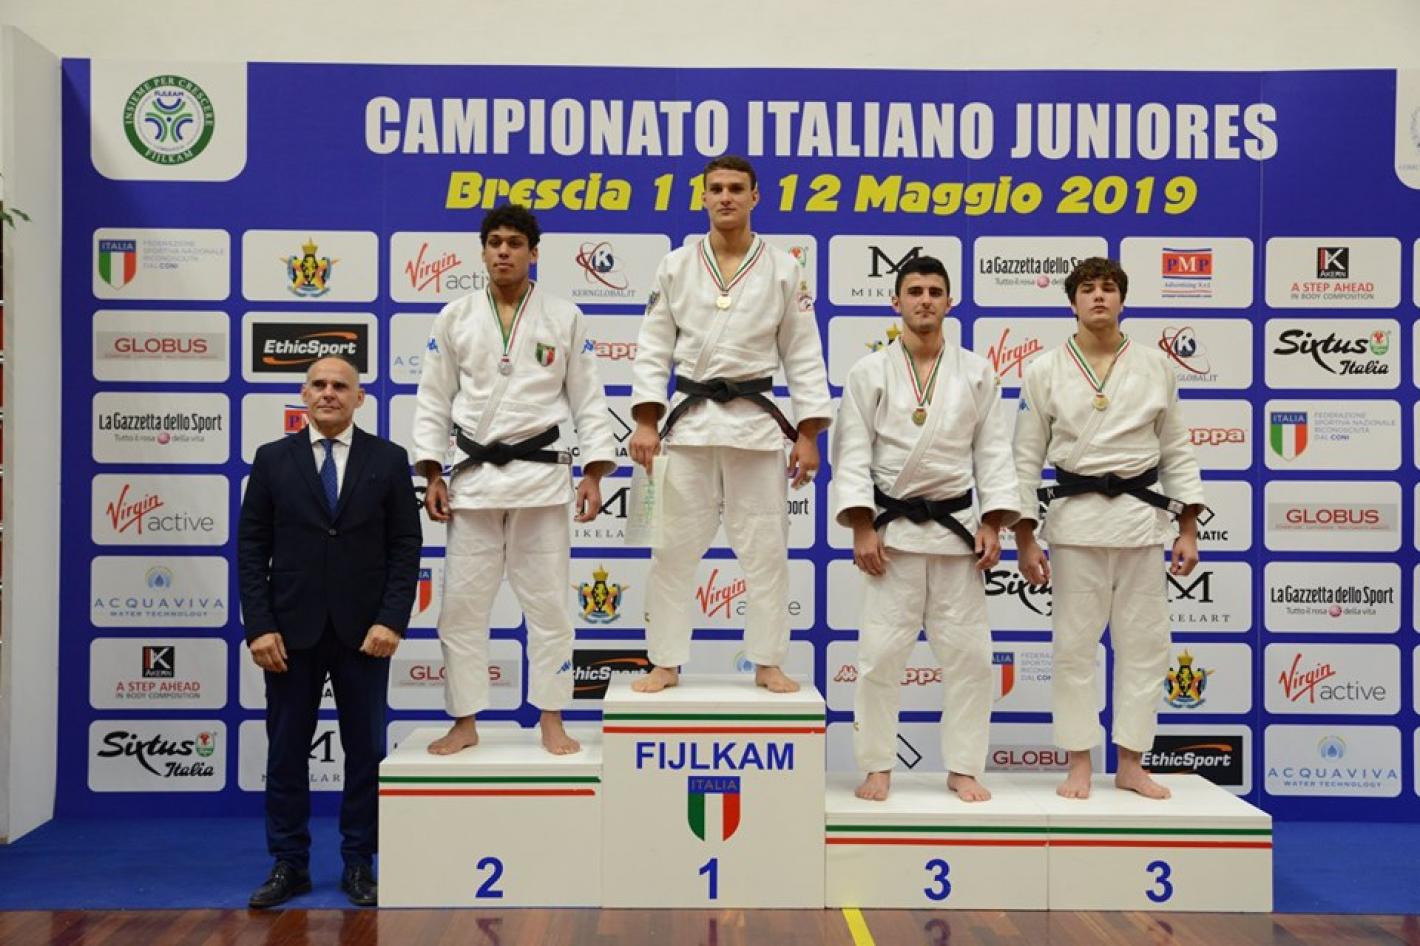 images/friuli_venezia_giulia/medium/campionati_italiani_junior_2019_bedel.jpg